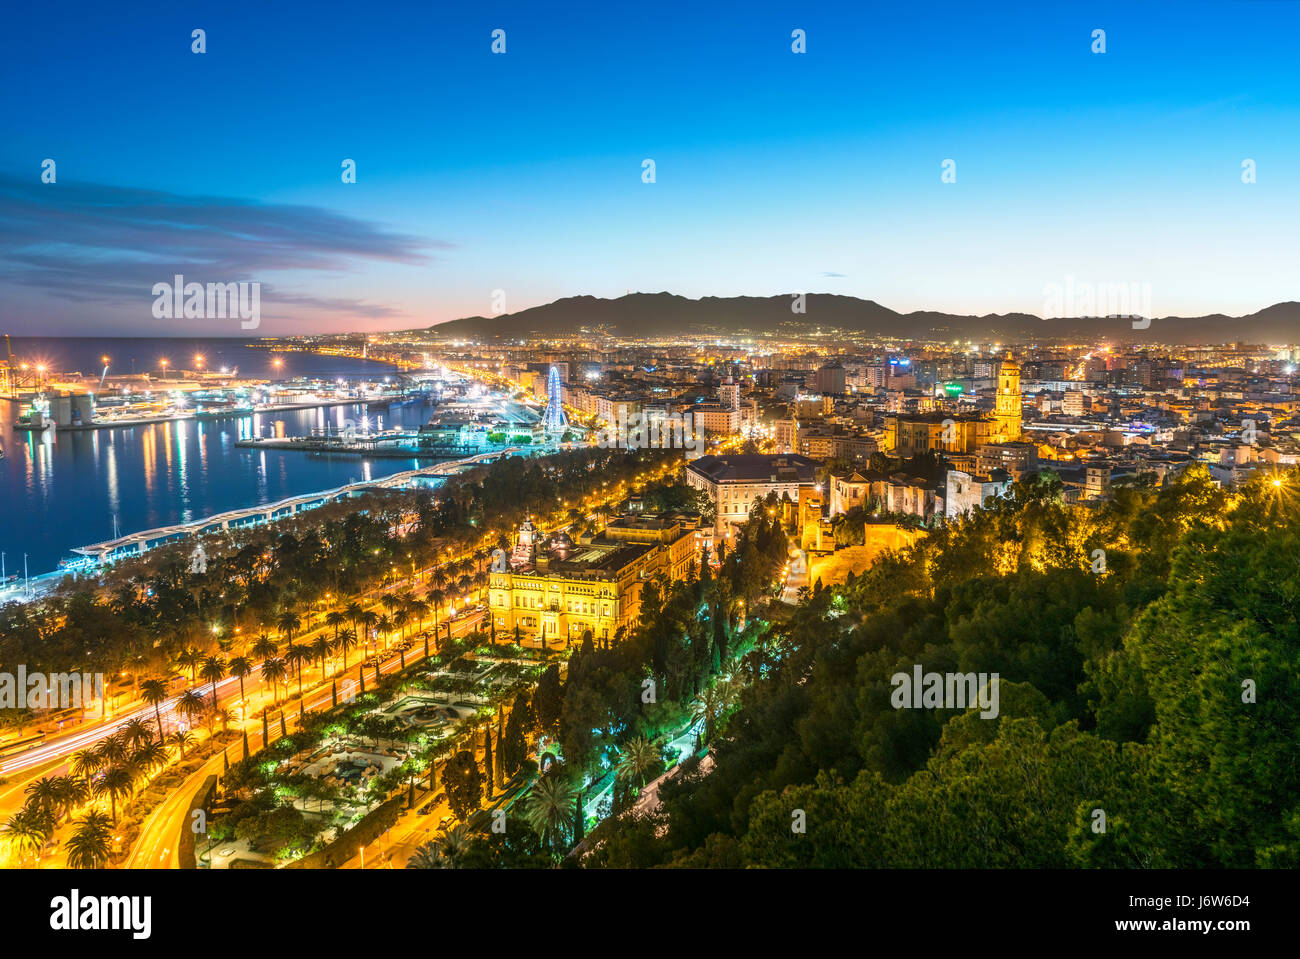 La cathédrale de la vieille ville de Málaga et Port Harbour Harbour vue panoramique au coucher du soleil crépuscule crépuscule soir Malaga Espagne. Du Mirador de Gibralfaro surplombent. Banque D'Images